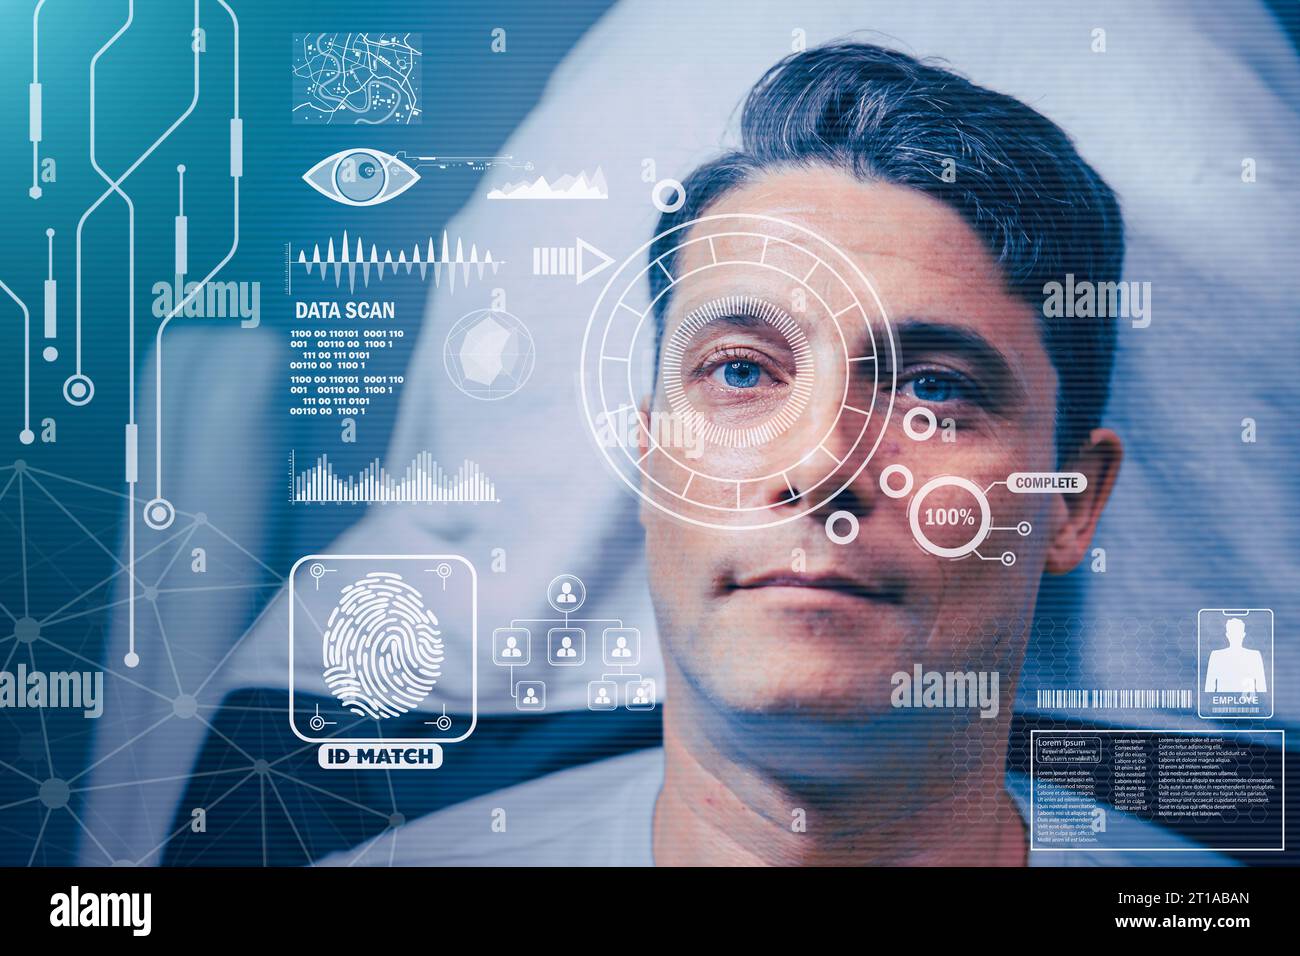 Biometrische Gesichtserkennung Iris-Netzhautscanner für persönliche Identität Verifizieren Sie moderne Innovation Sicherheitssystemtechnologie Stockfoto